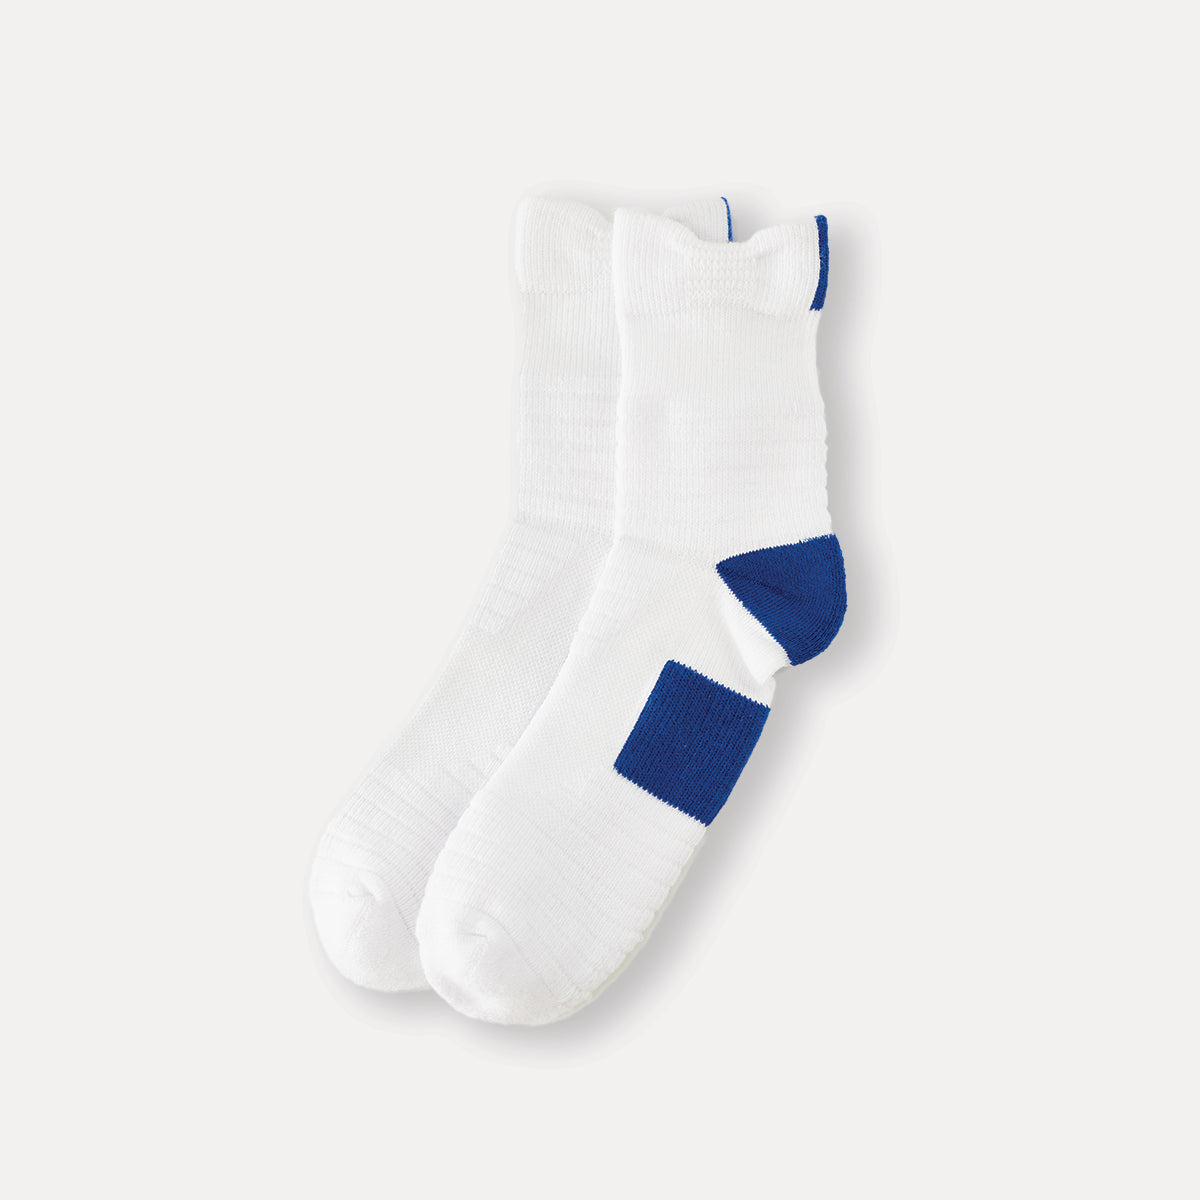 襪子 | ACTIVE 船員襪 - 喜白/藍